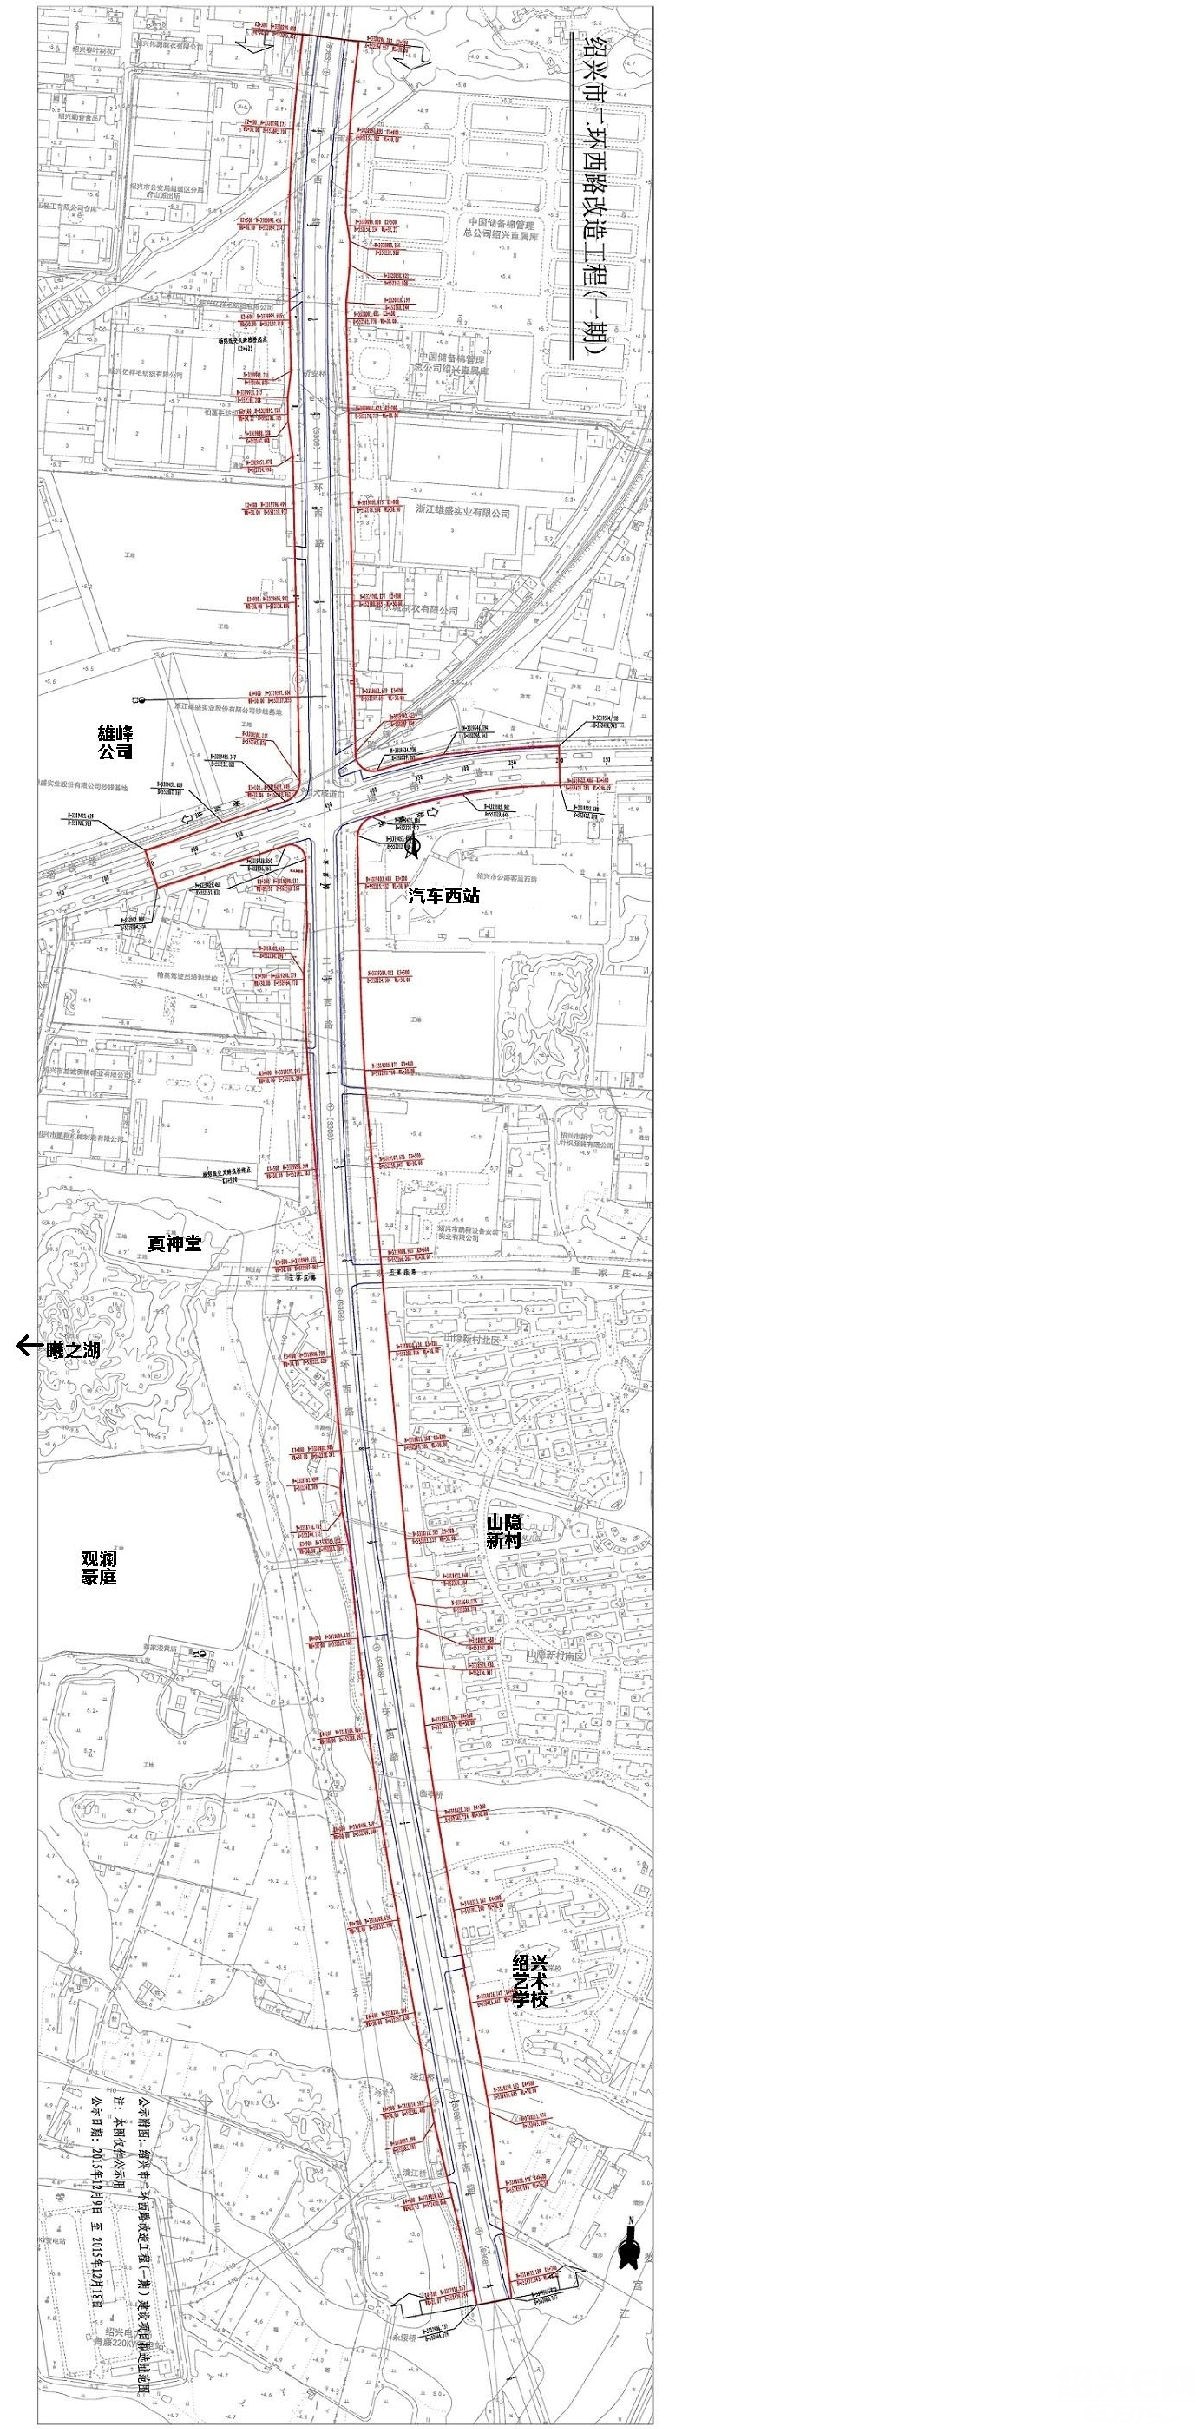 绍兴市二环西路改造工程(一期)项目公示,双向4车道拓宽至双向8车道